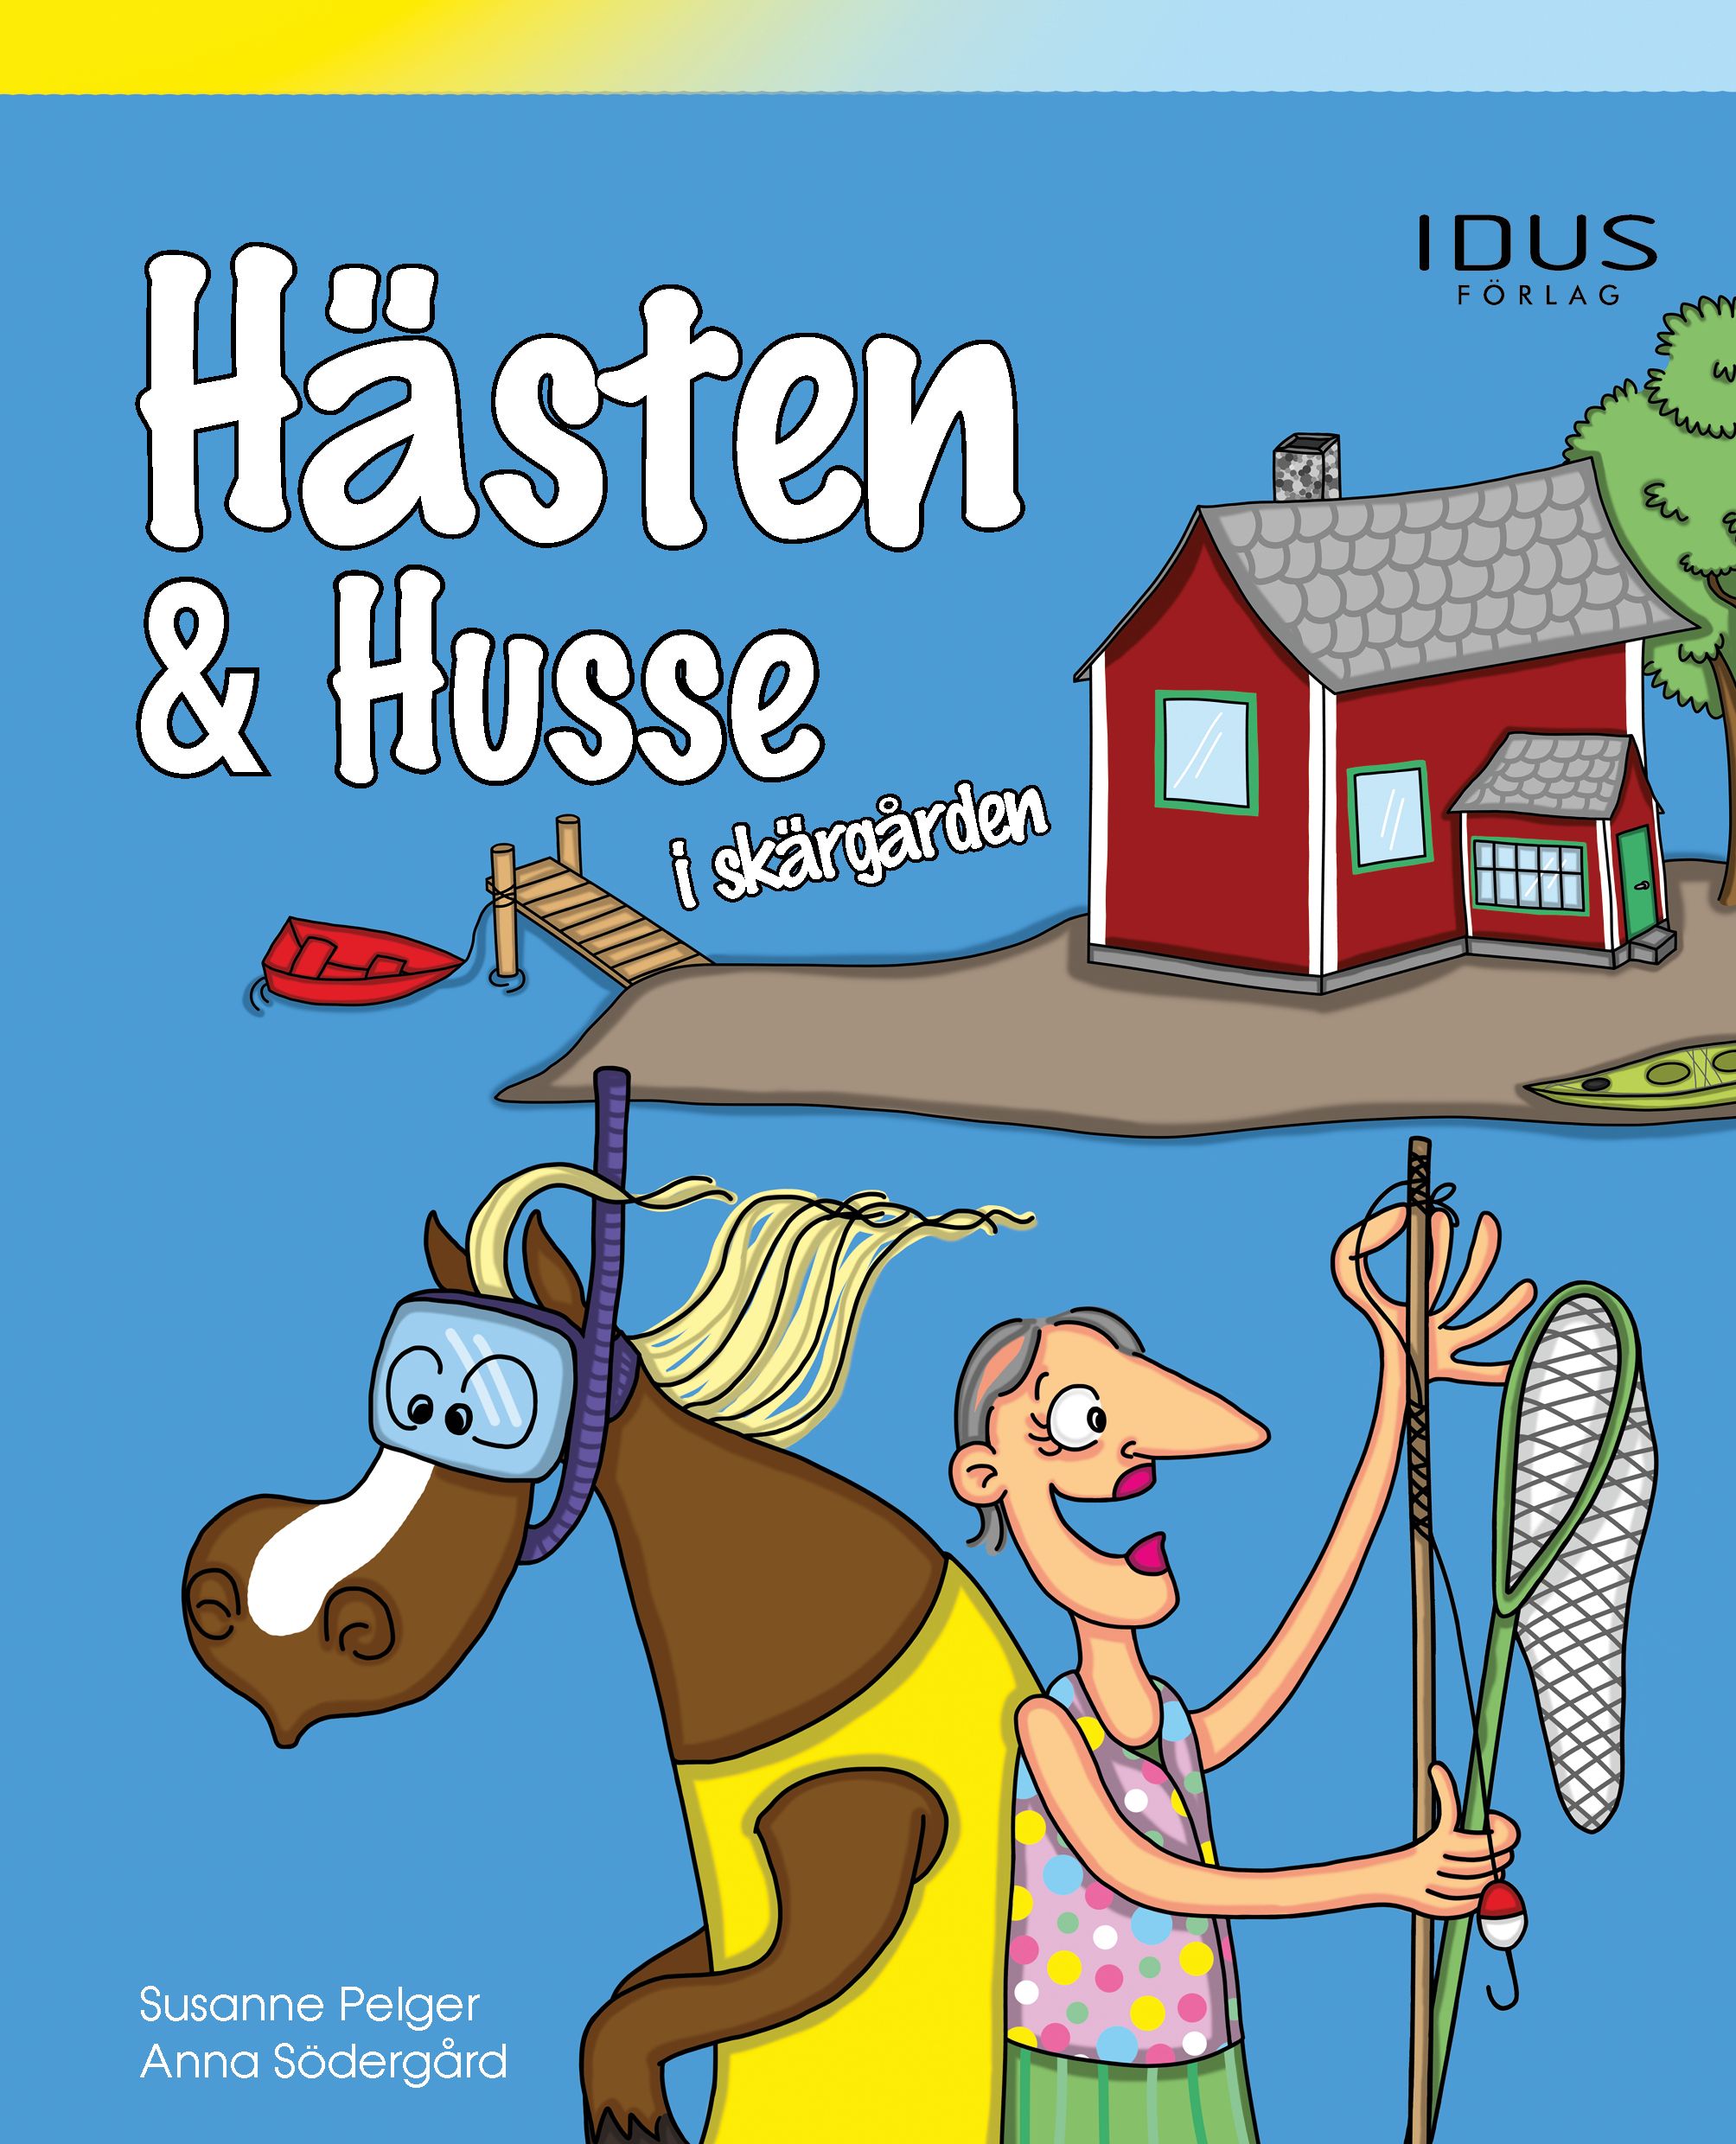 Hästen & Husse i skärgården, eBook by Susanne Pelger